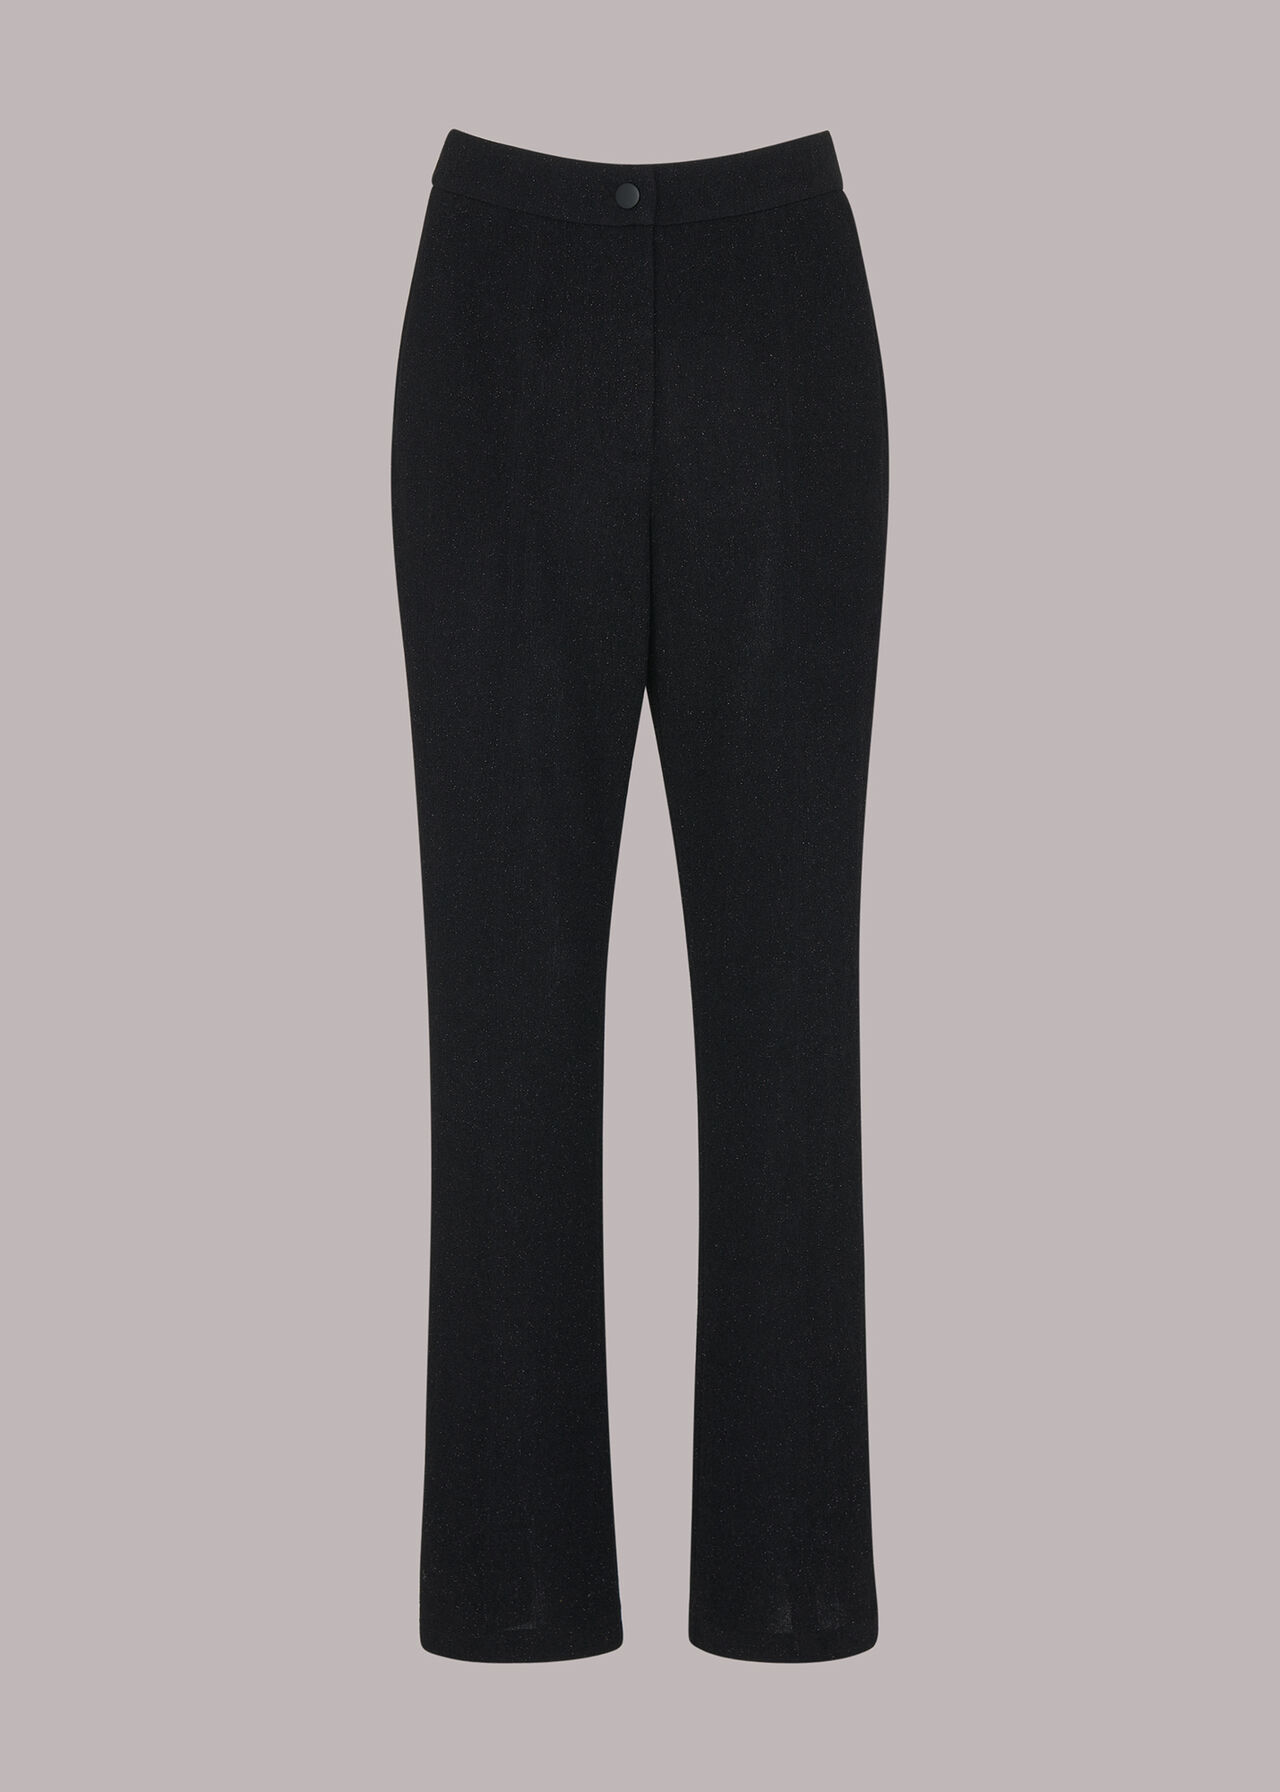 Black Gillian Sparkle Trouser, WHISTLES